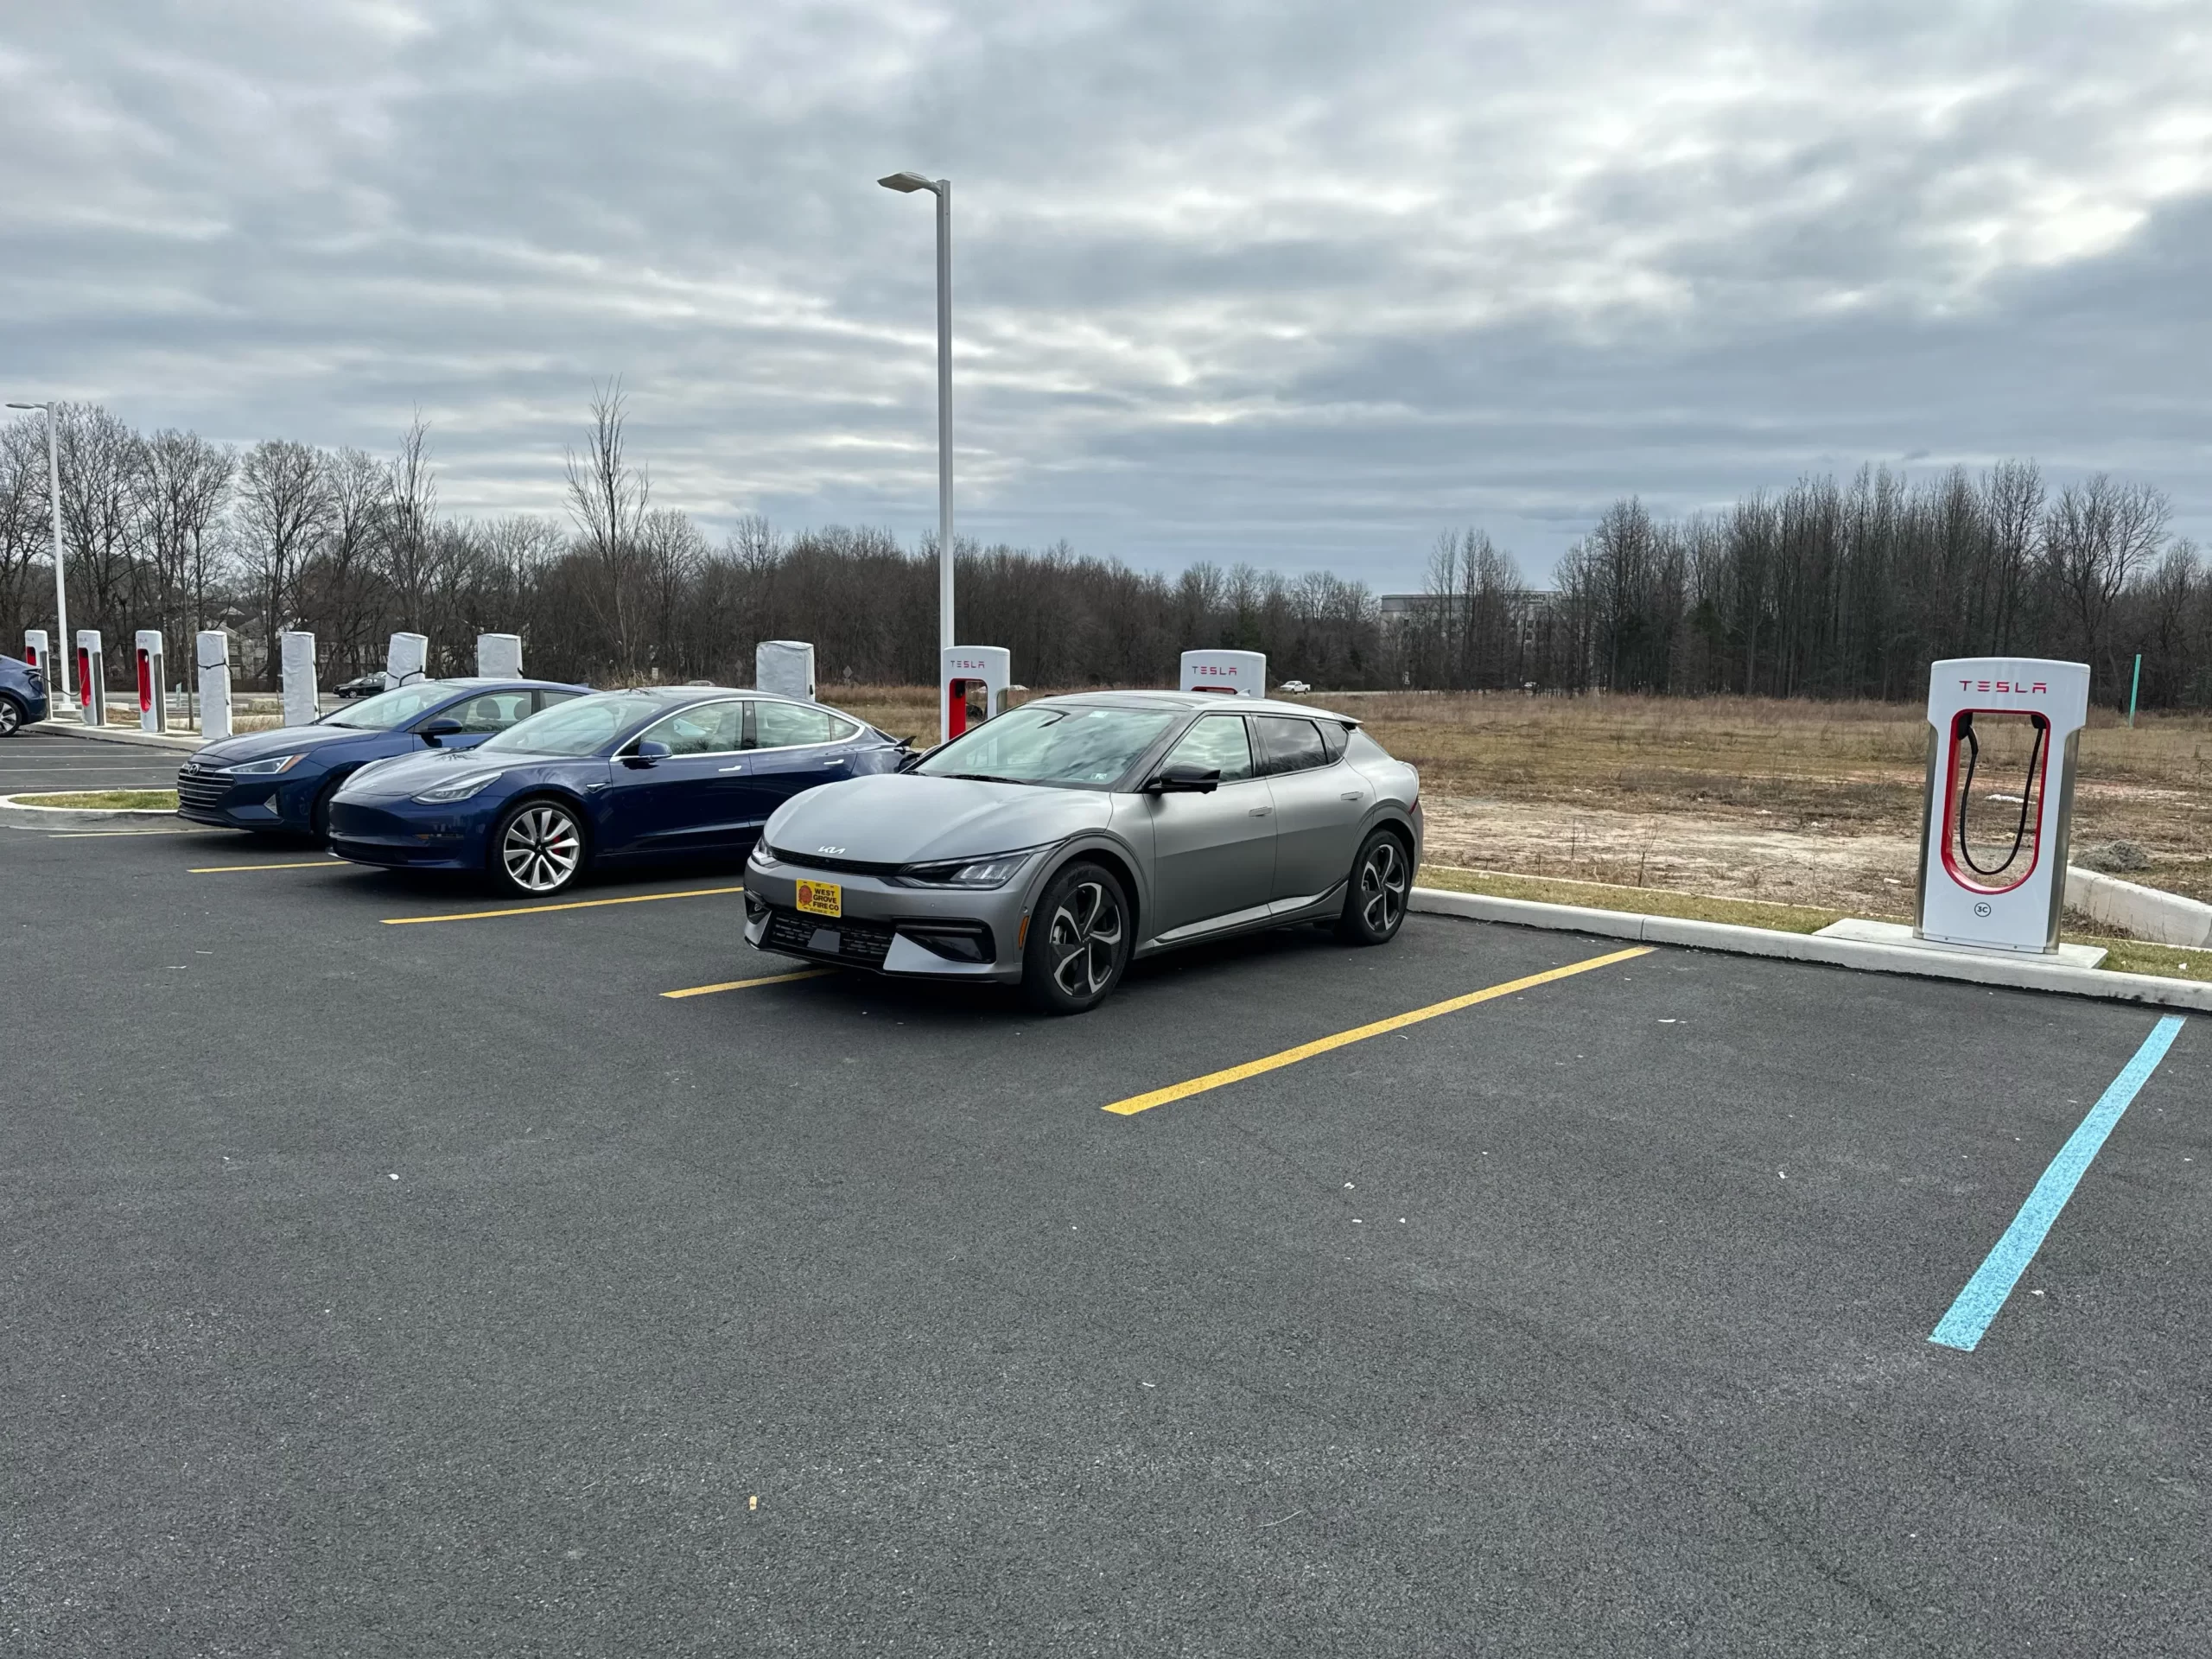 Tesla EV Charging Station scaled https://electriccarfinder.com/author/electriccarfinder/